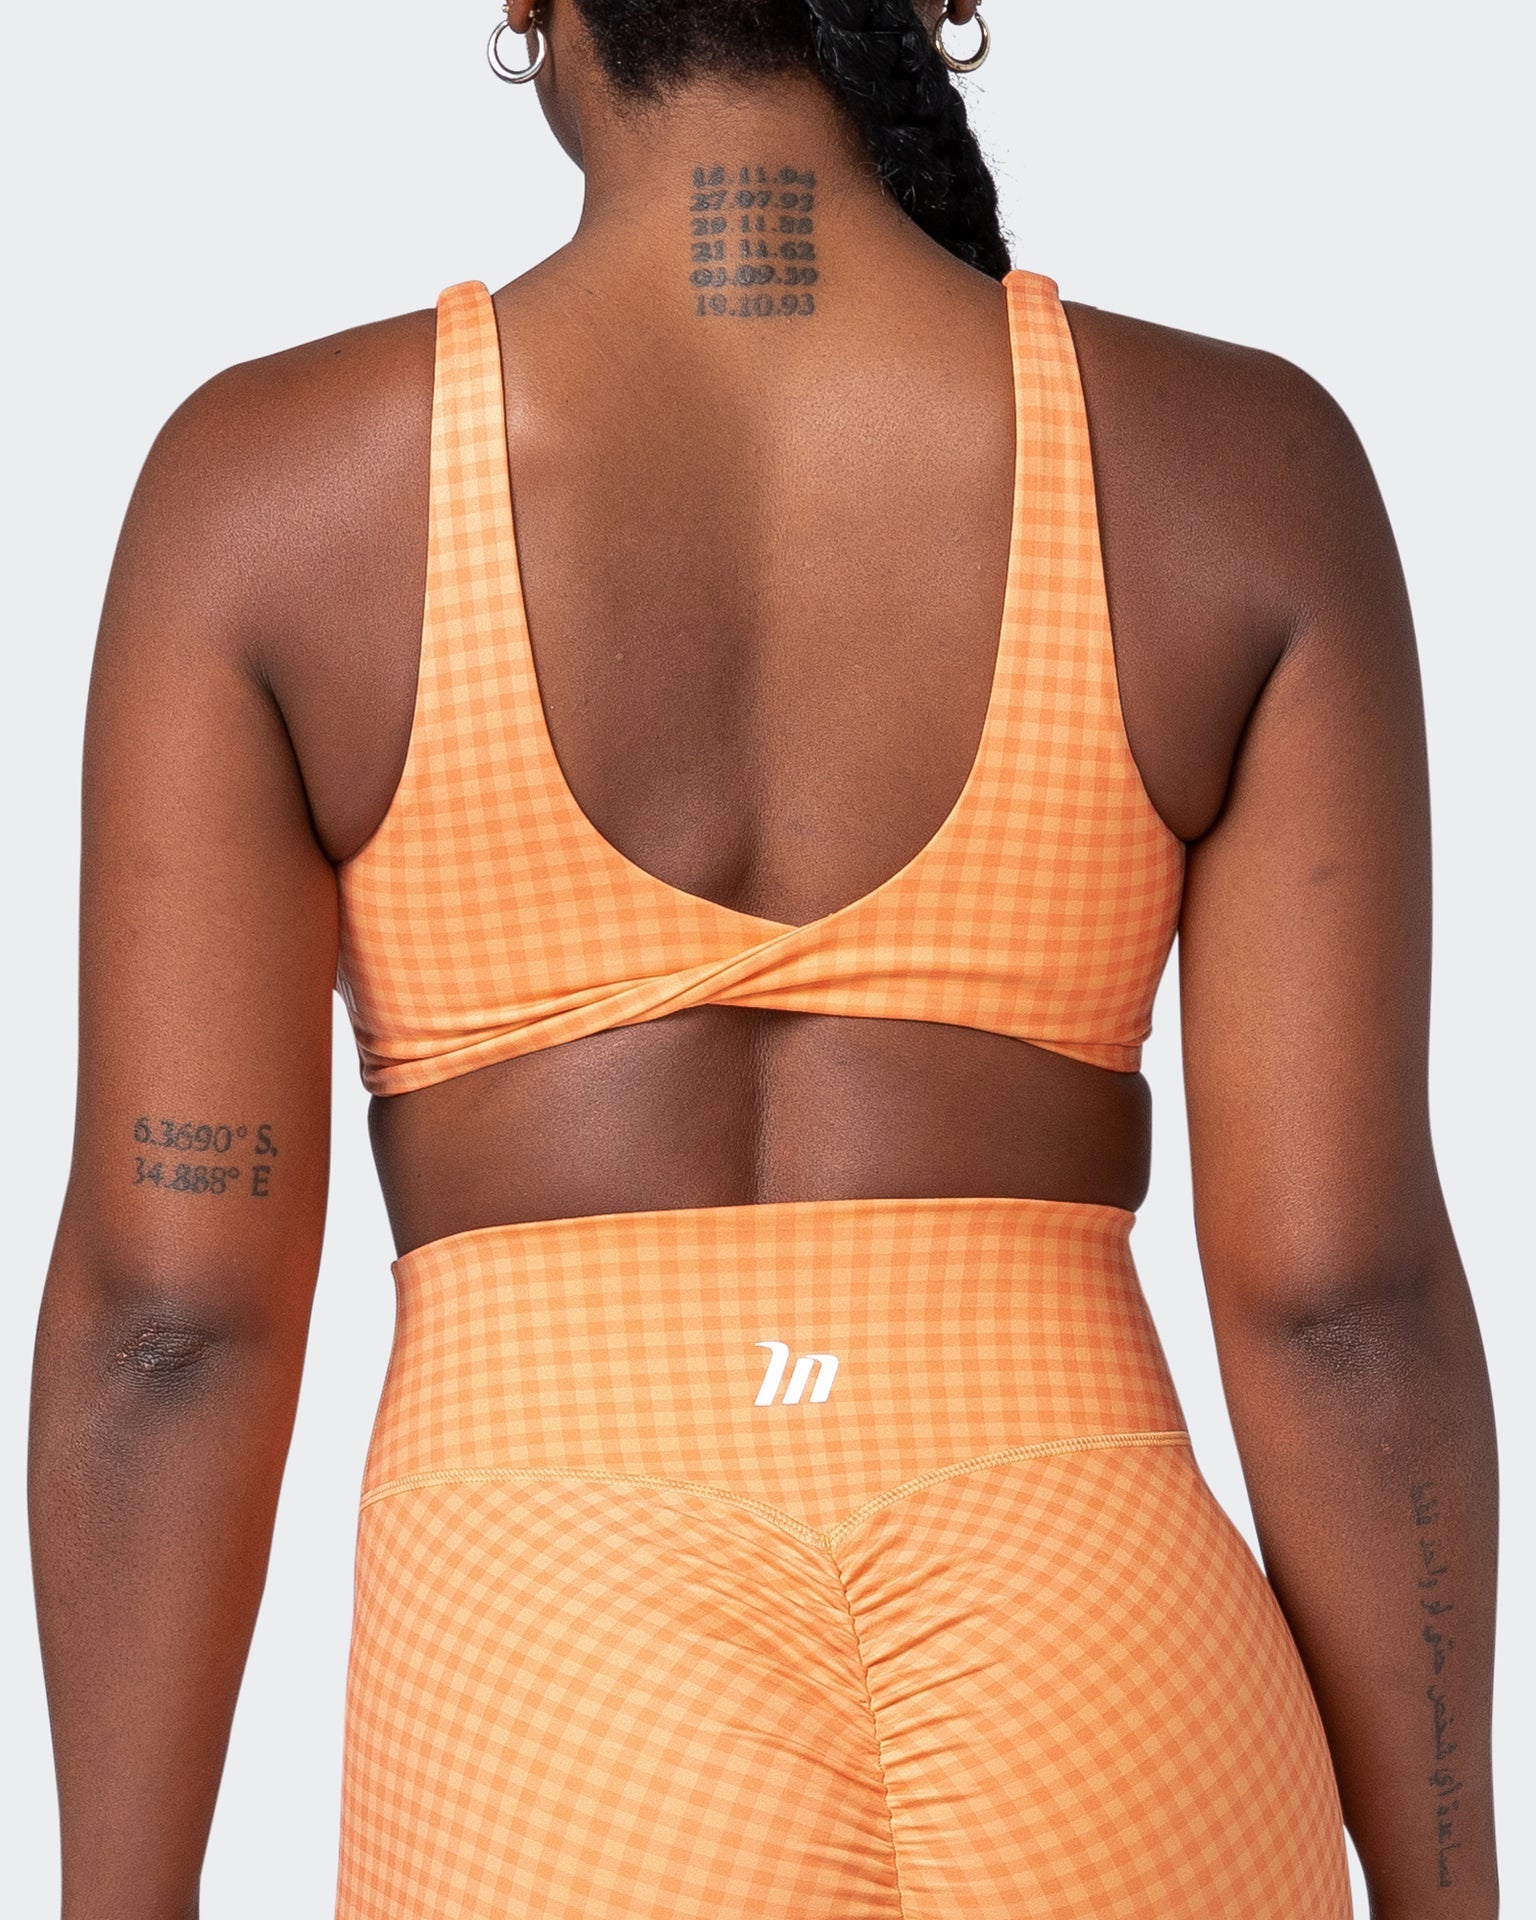 musclenation Sports Bras Demi Bralette - Peaches And Cream Check Print